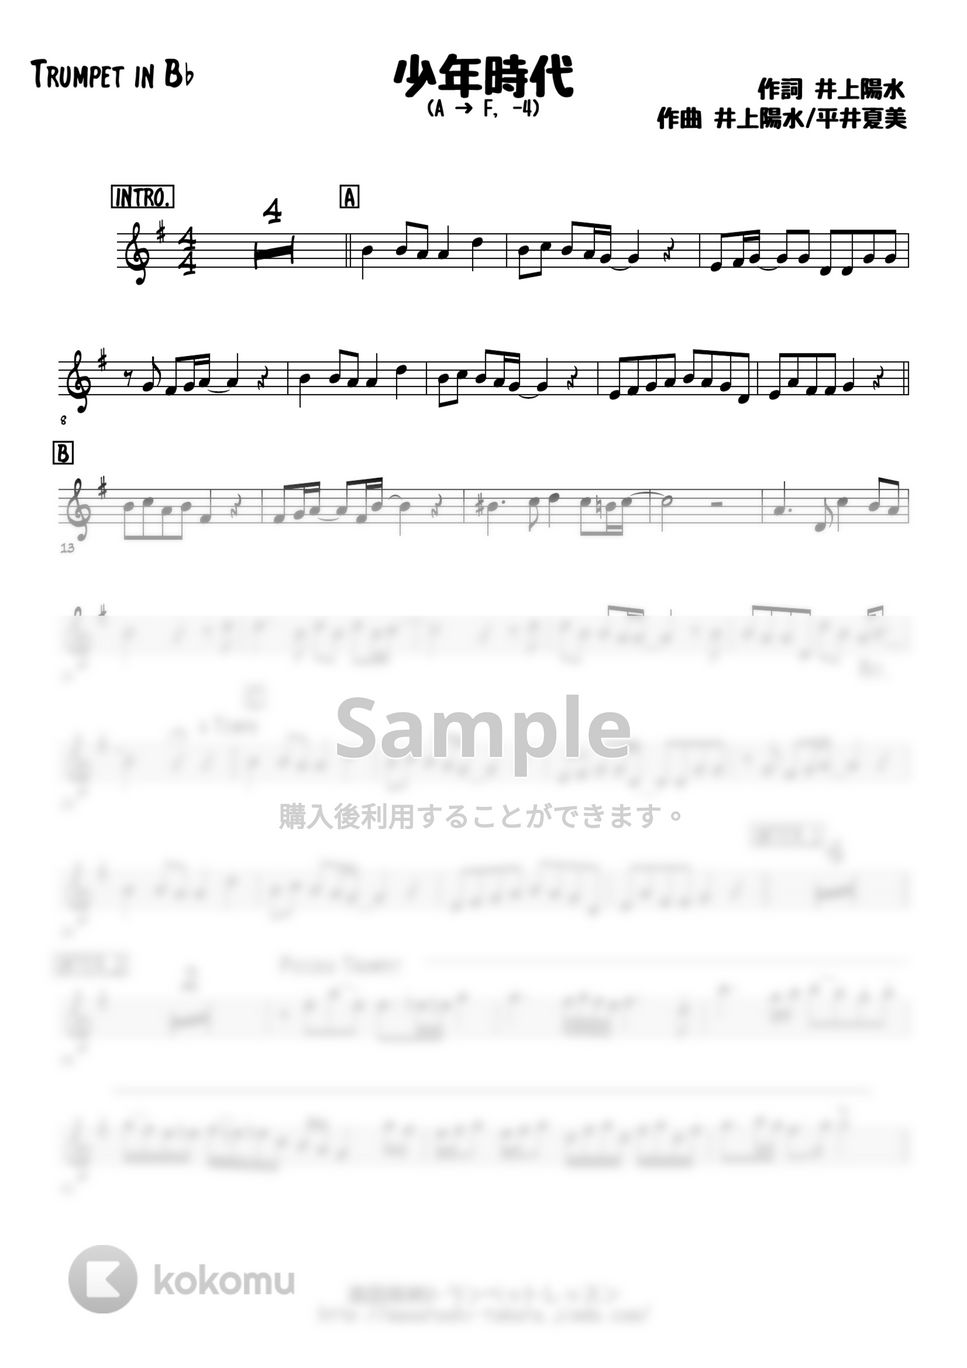 井上陽水 - 少年時代 (トランペットメロディー楽譜) by 高田将利